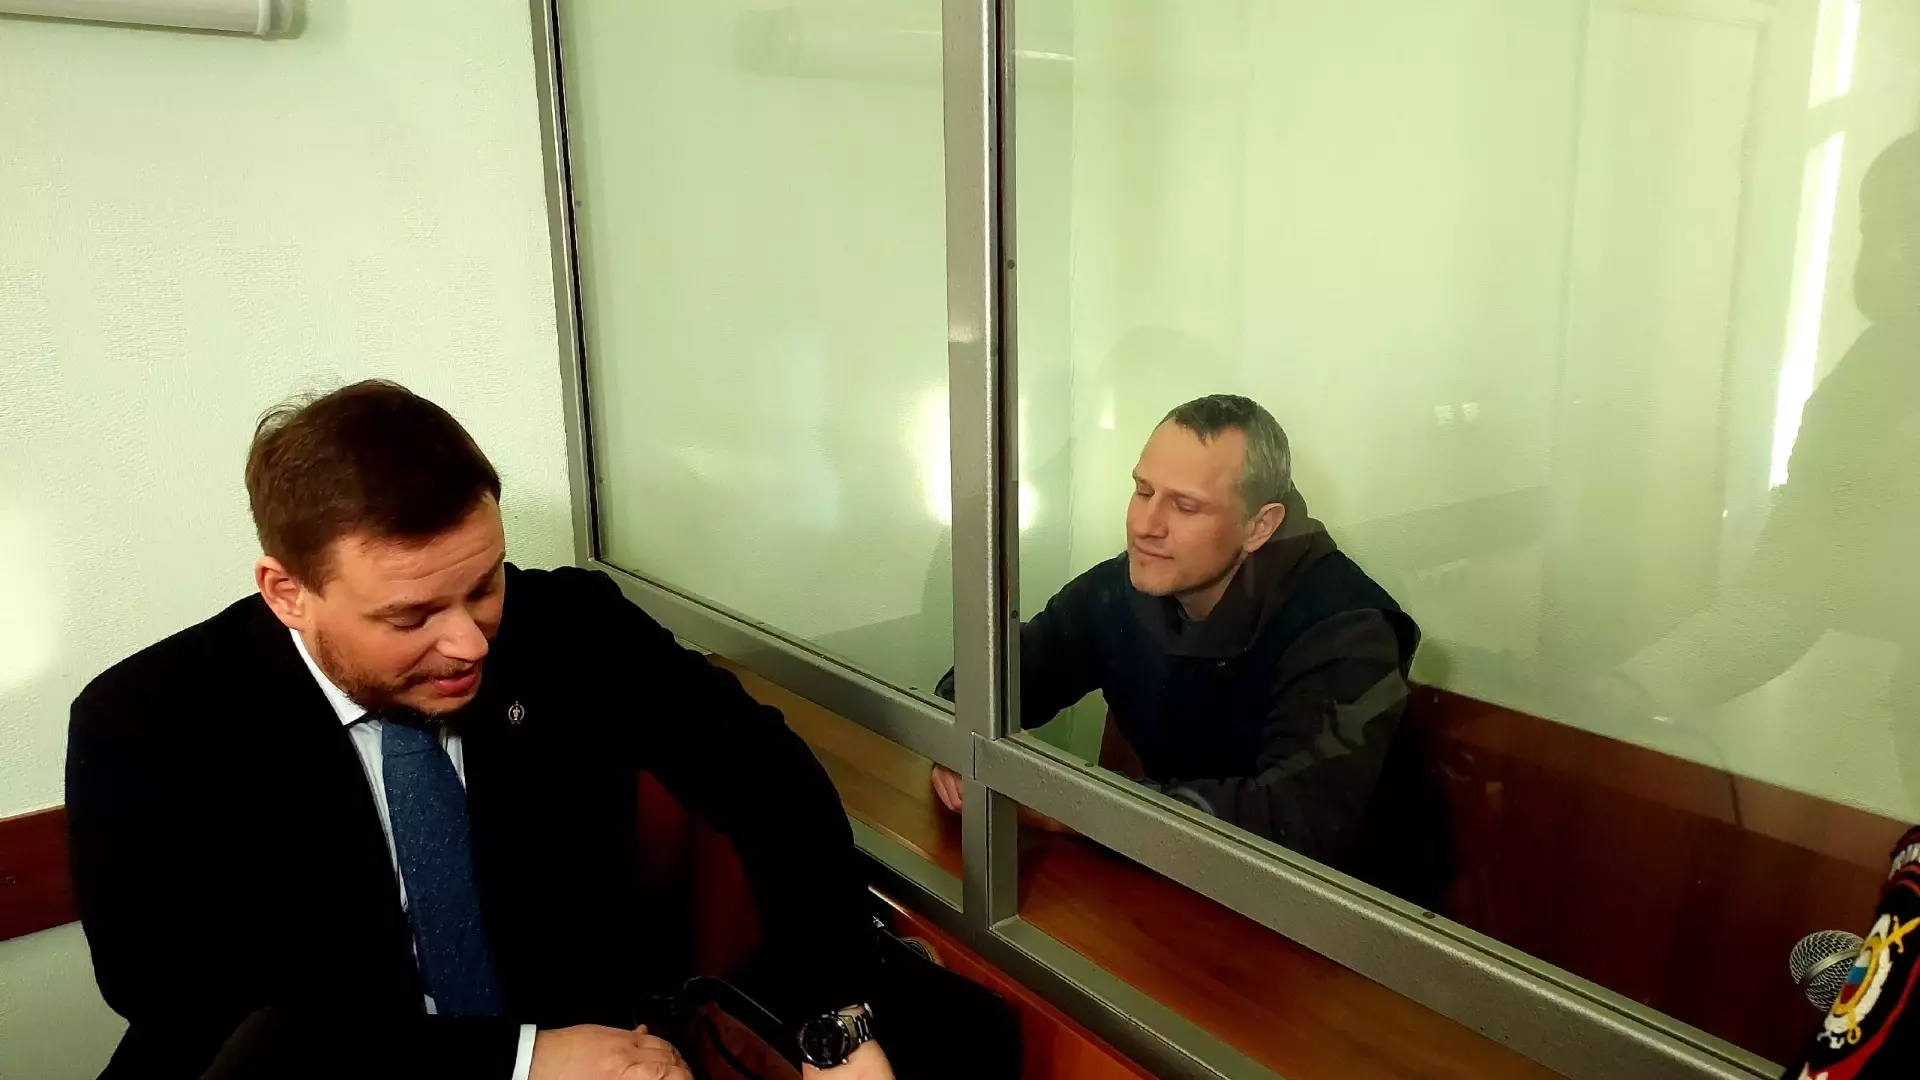 Кручинин подал апелляцию в областной суд